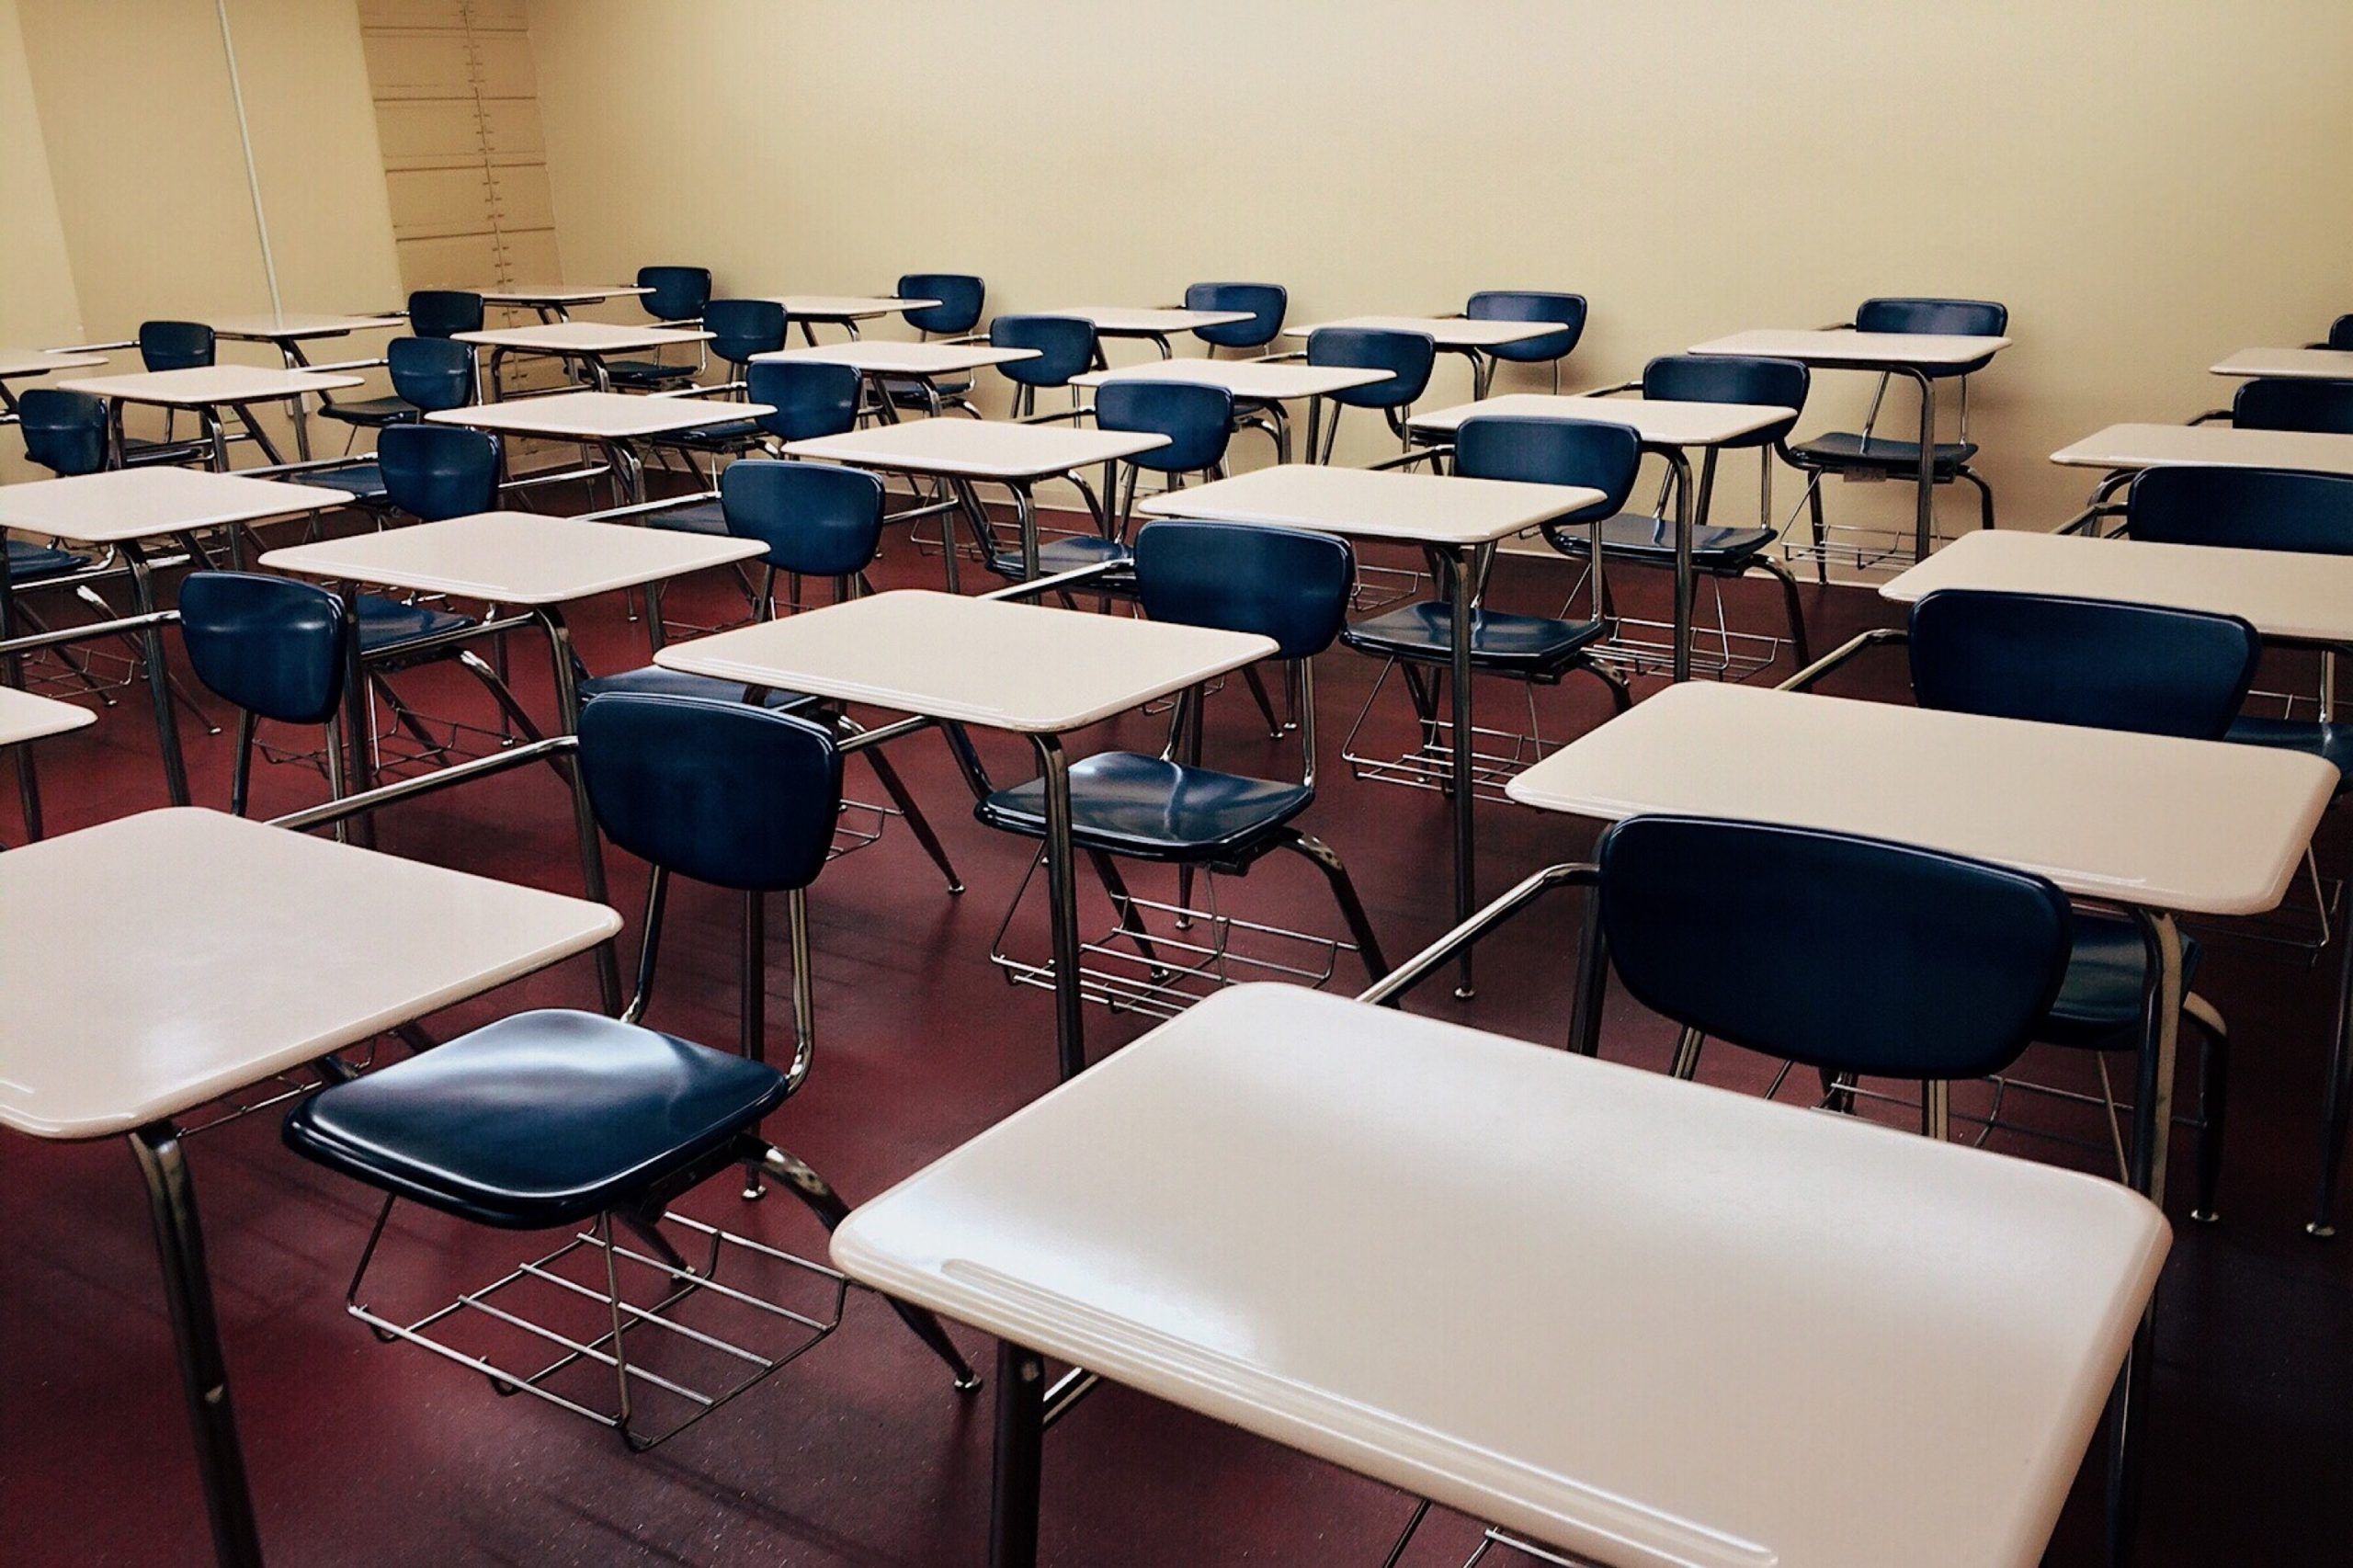 Escuelas particulares buscan solución para no perder clases ni ingresos por covid-19